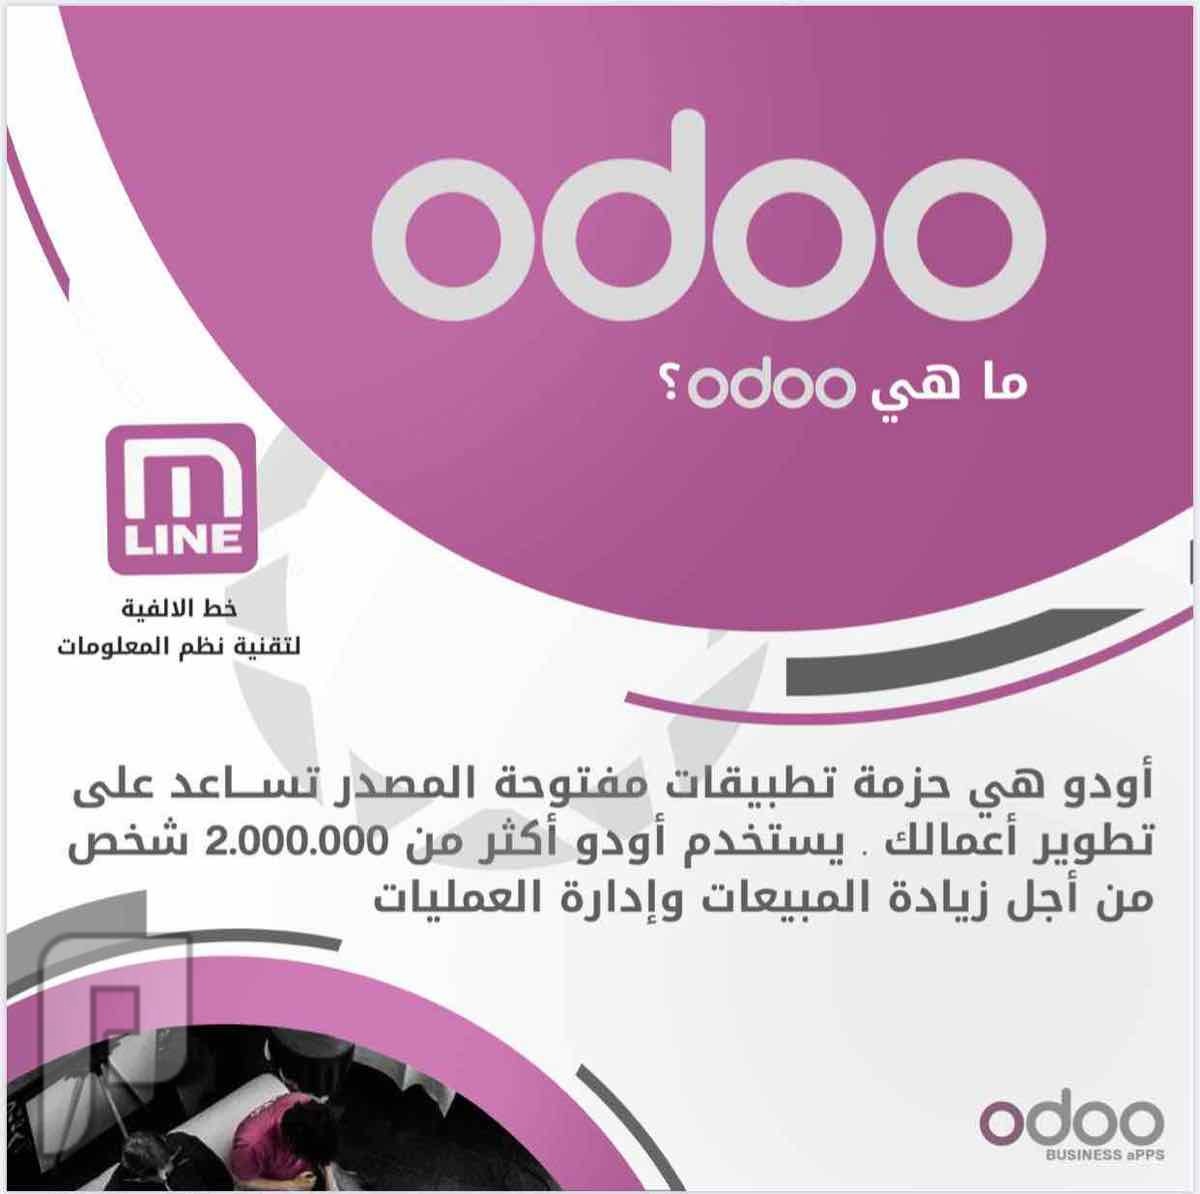 برنامج اودو odoo لكافة الانشطة التجارية